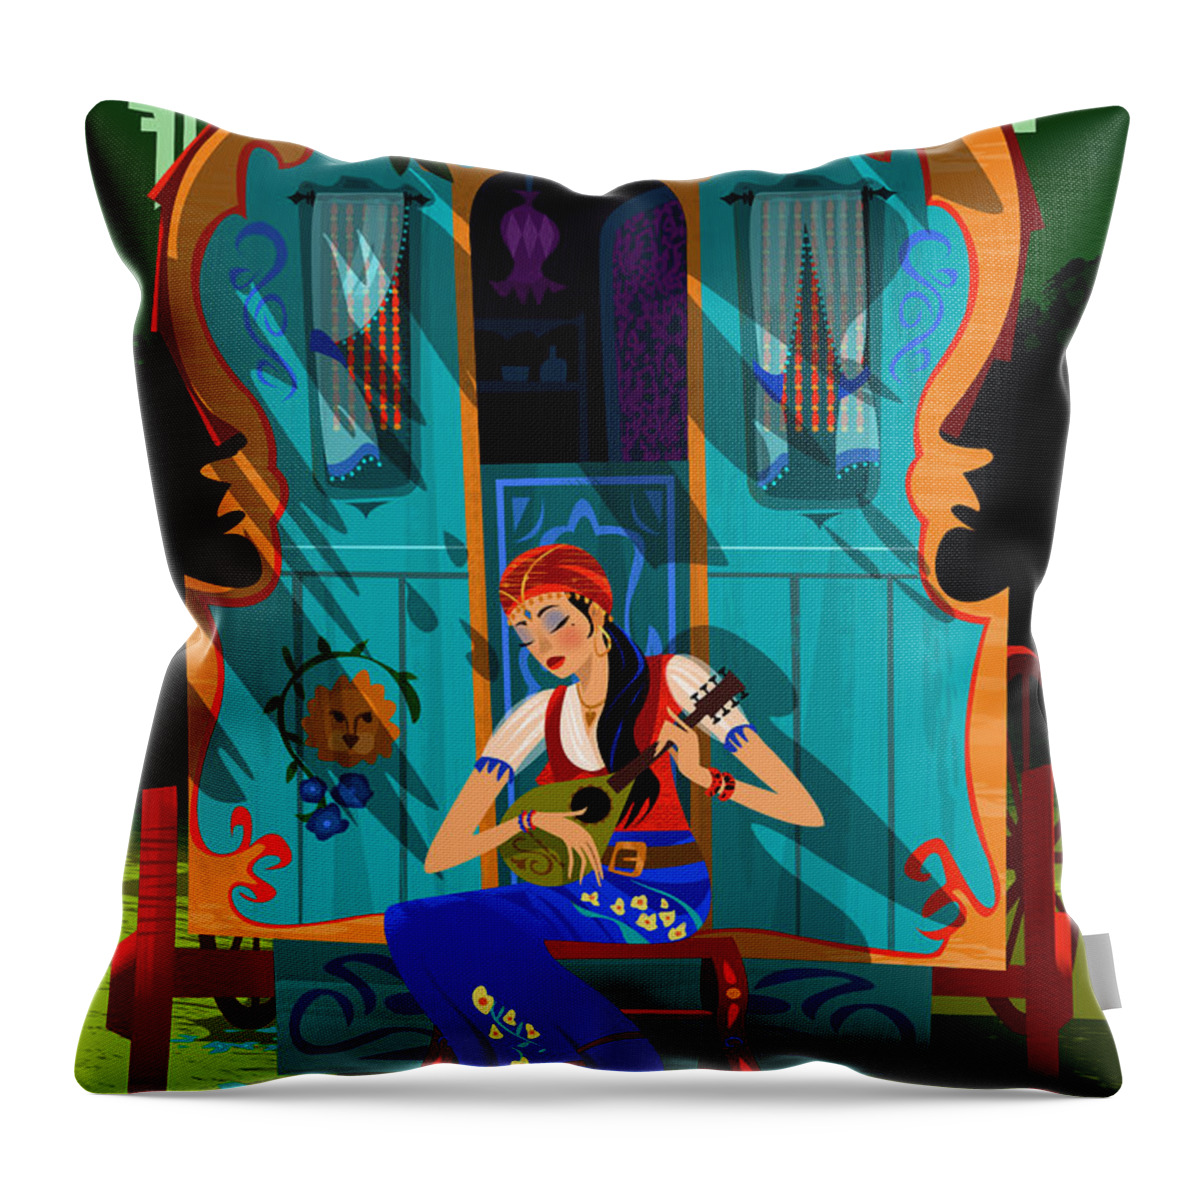 Gypsy Throw Pillow featuring the digital art Gypsy Caravan by Alan Bodner